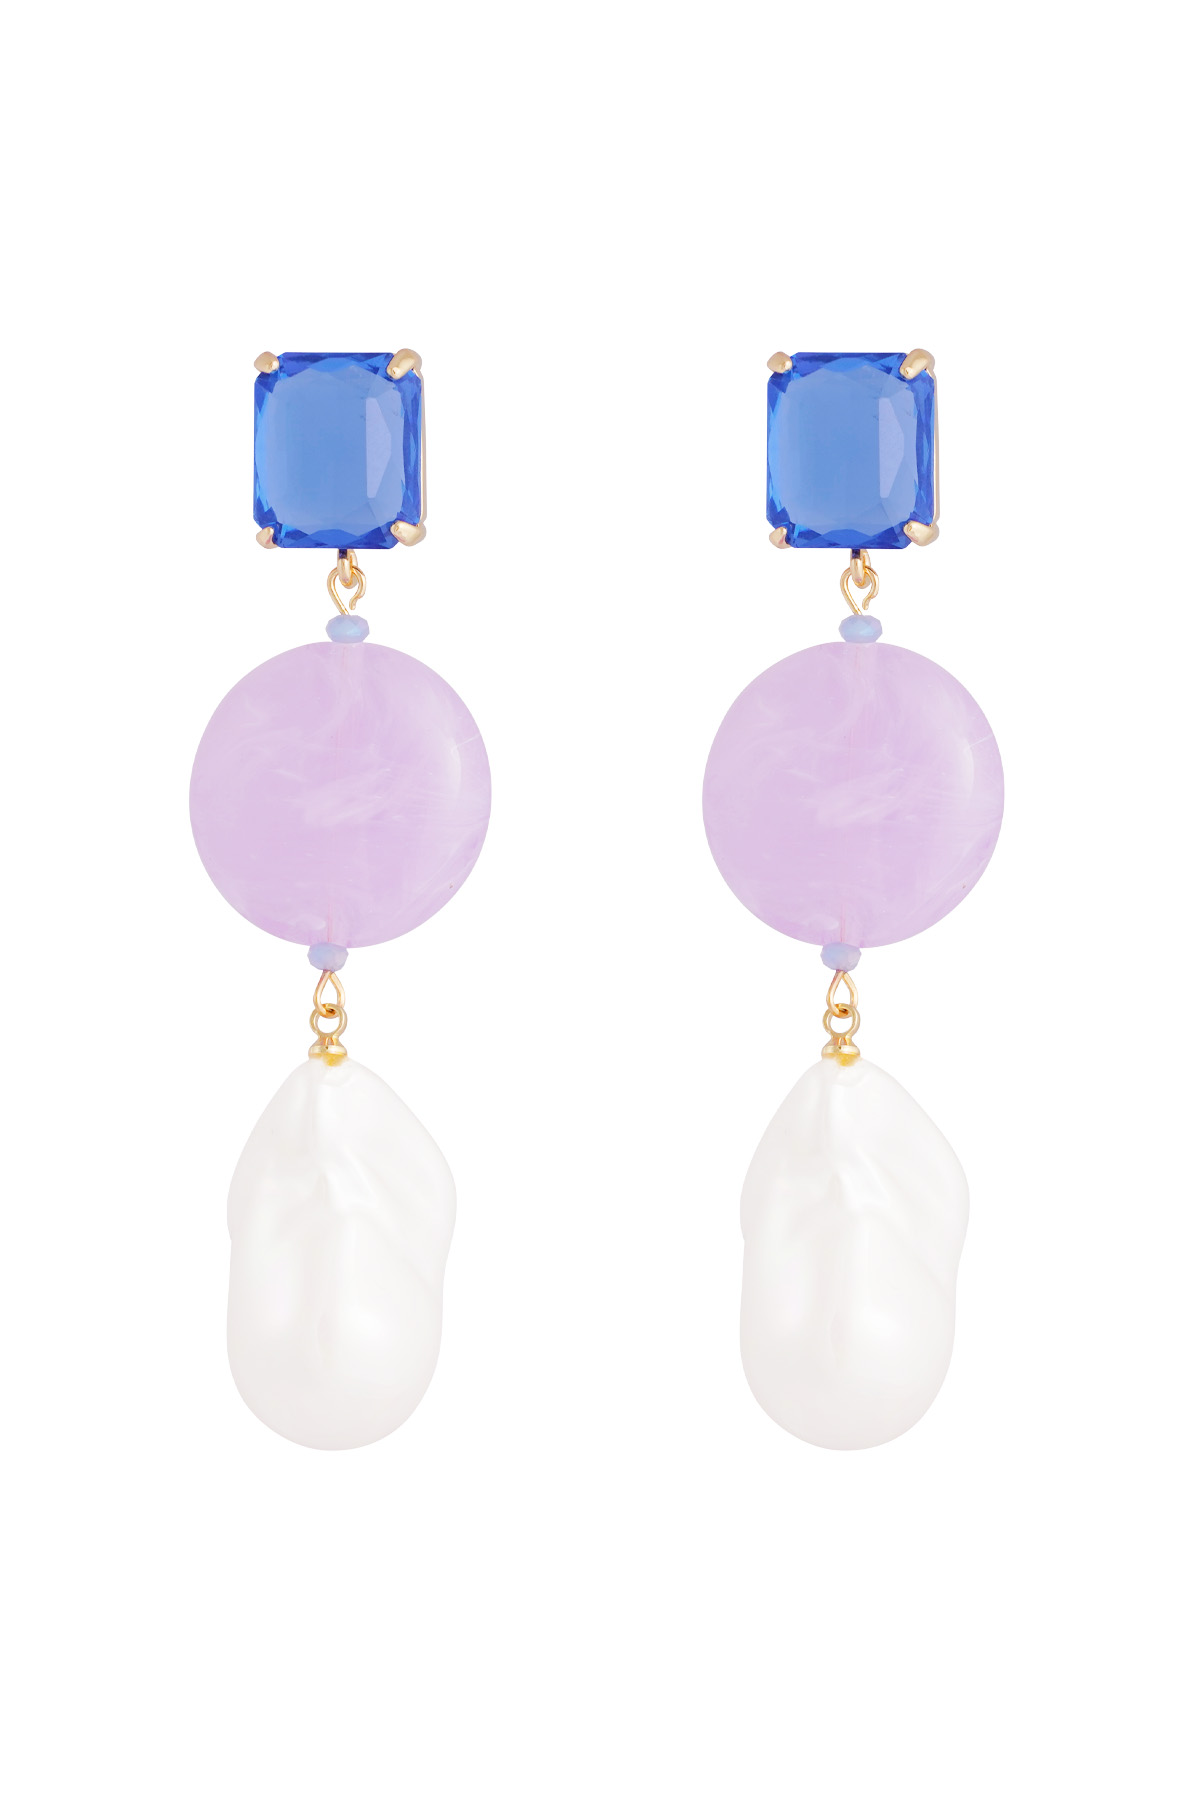 Earrings vintage pearls - blue purple h5 